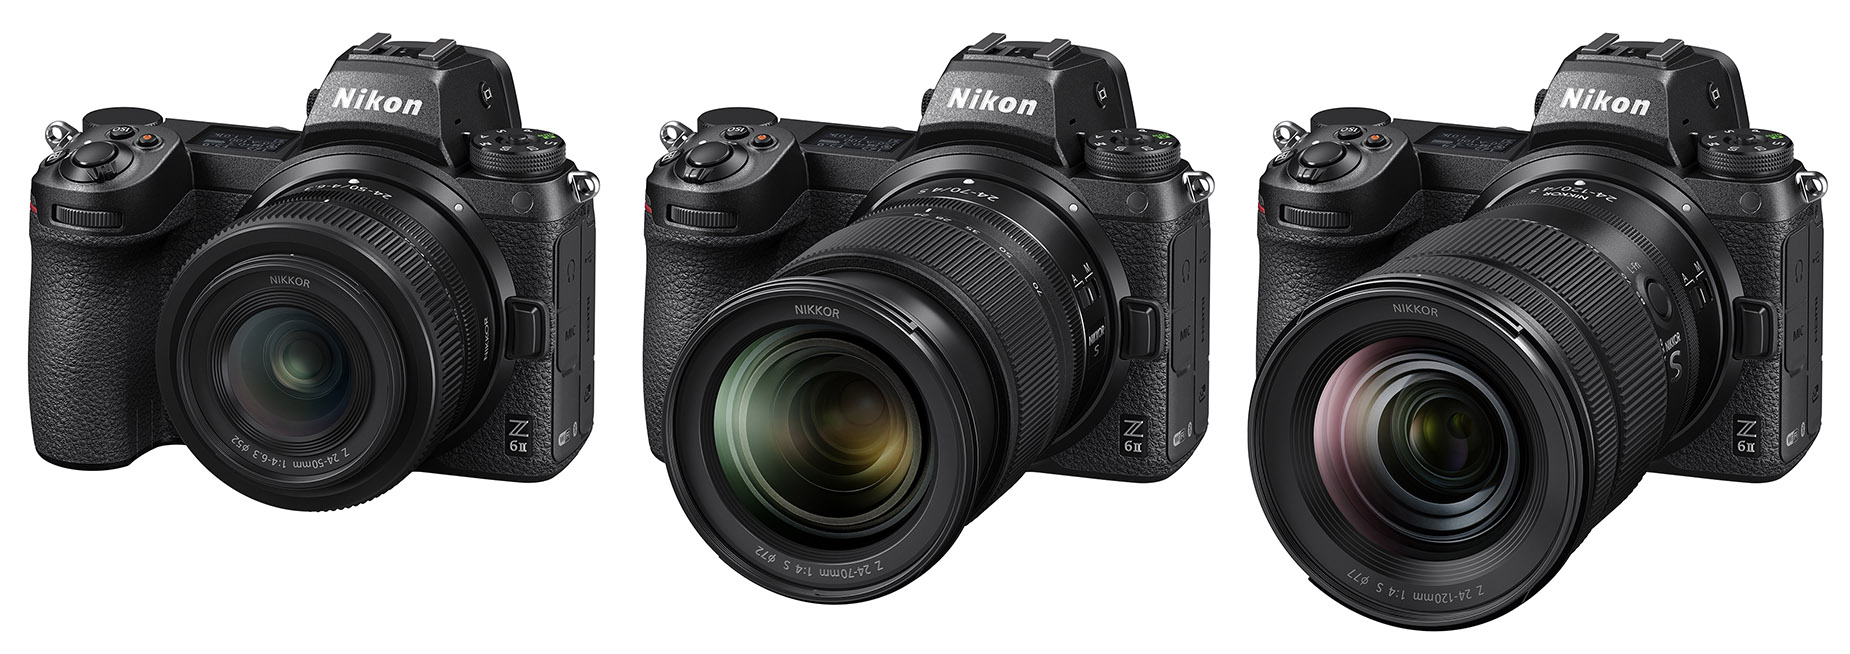 24 120mm f 4g ed vr. Nikon 24-120 f4. Nikon 24-120mm f/4s. Nikon Nikkor z 24-120mm f/4 s. Nikon z 24-120 f4.